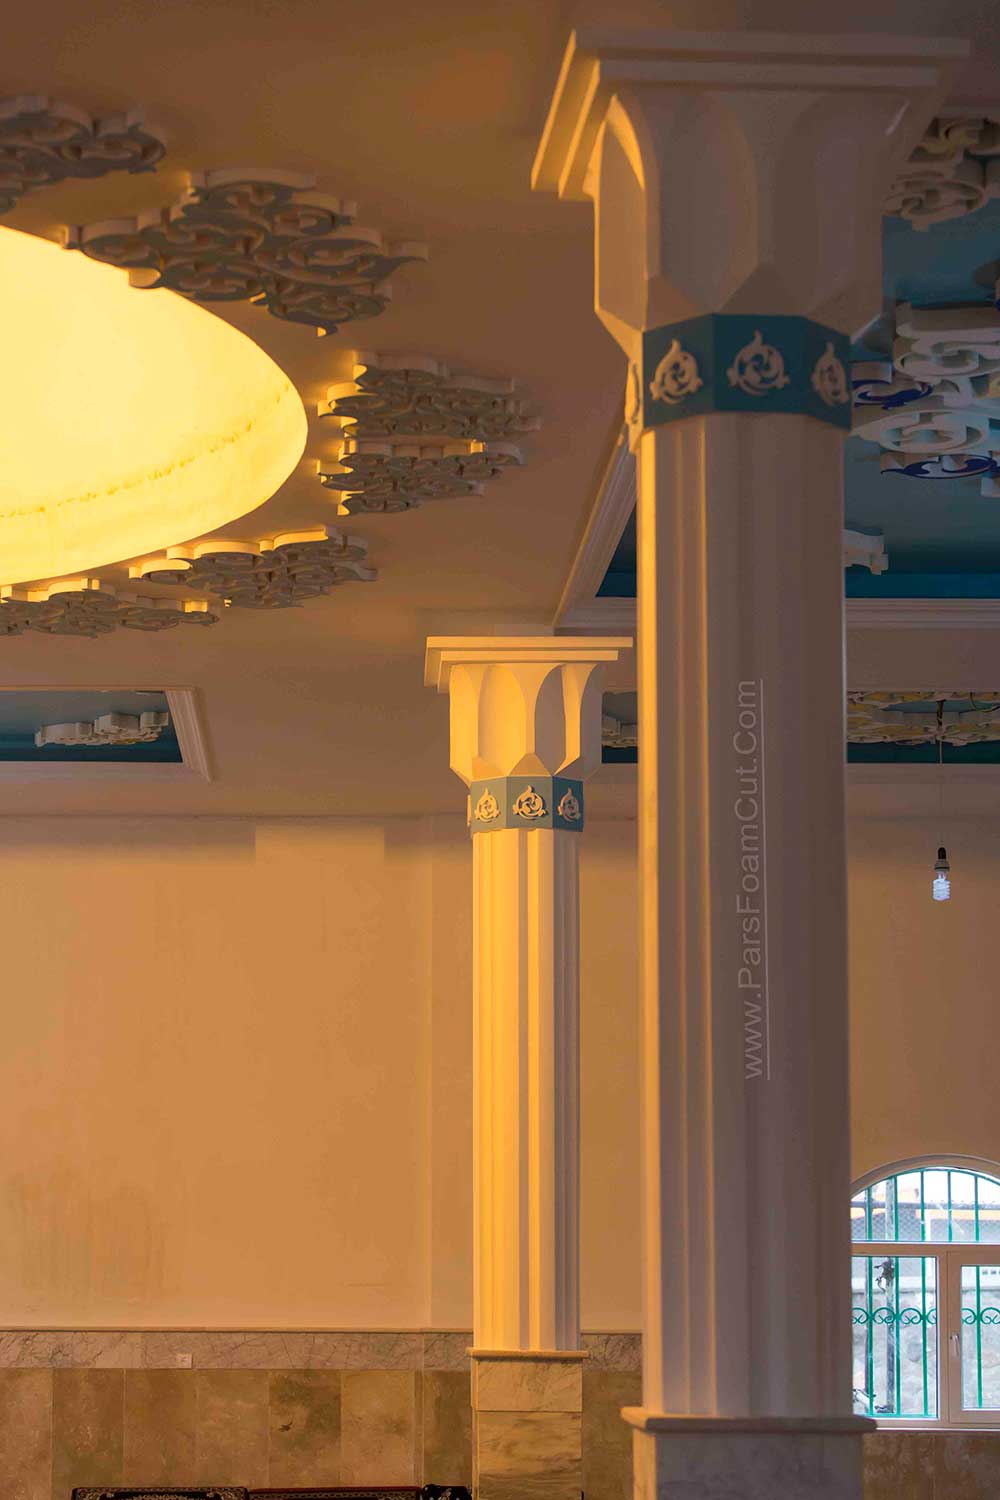 نمای داخلی امامزاده زین العابدین (ع) مشاء دماوند